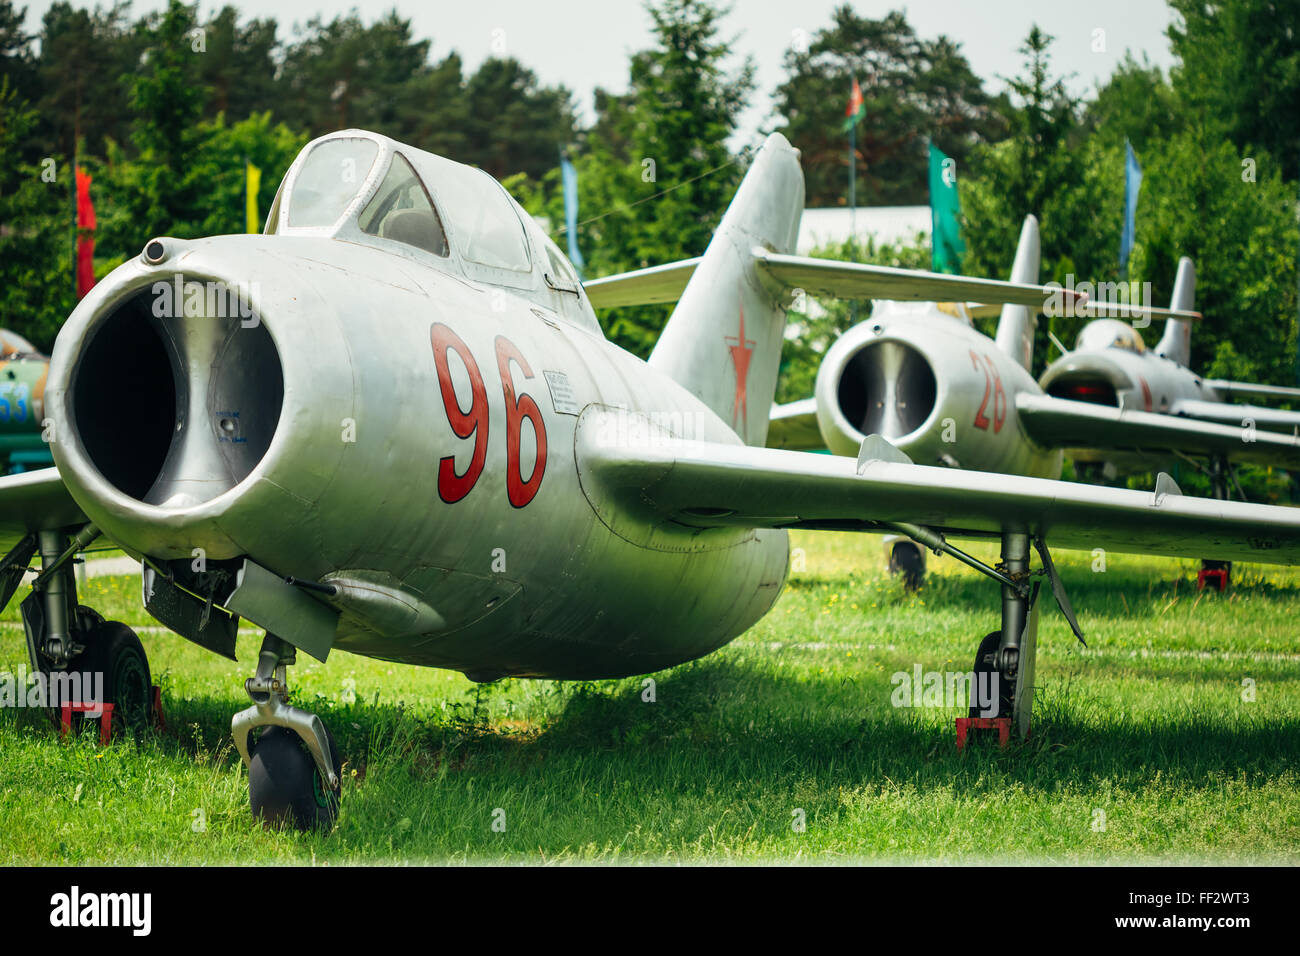 BOROVAYA, Bielorussia - Giugno 04, 2014: MiG-15 UTI è Soviet russo ad alto subsonico aerei da combattimento. Essa è stata utilizzata come efficace minaccia Foto Stock